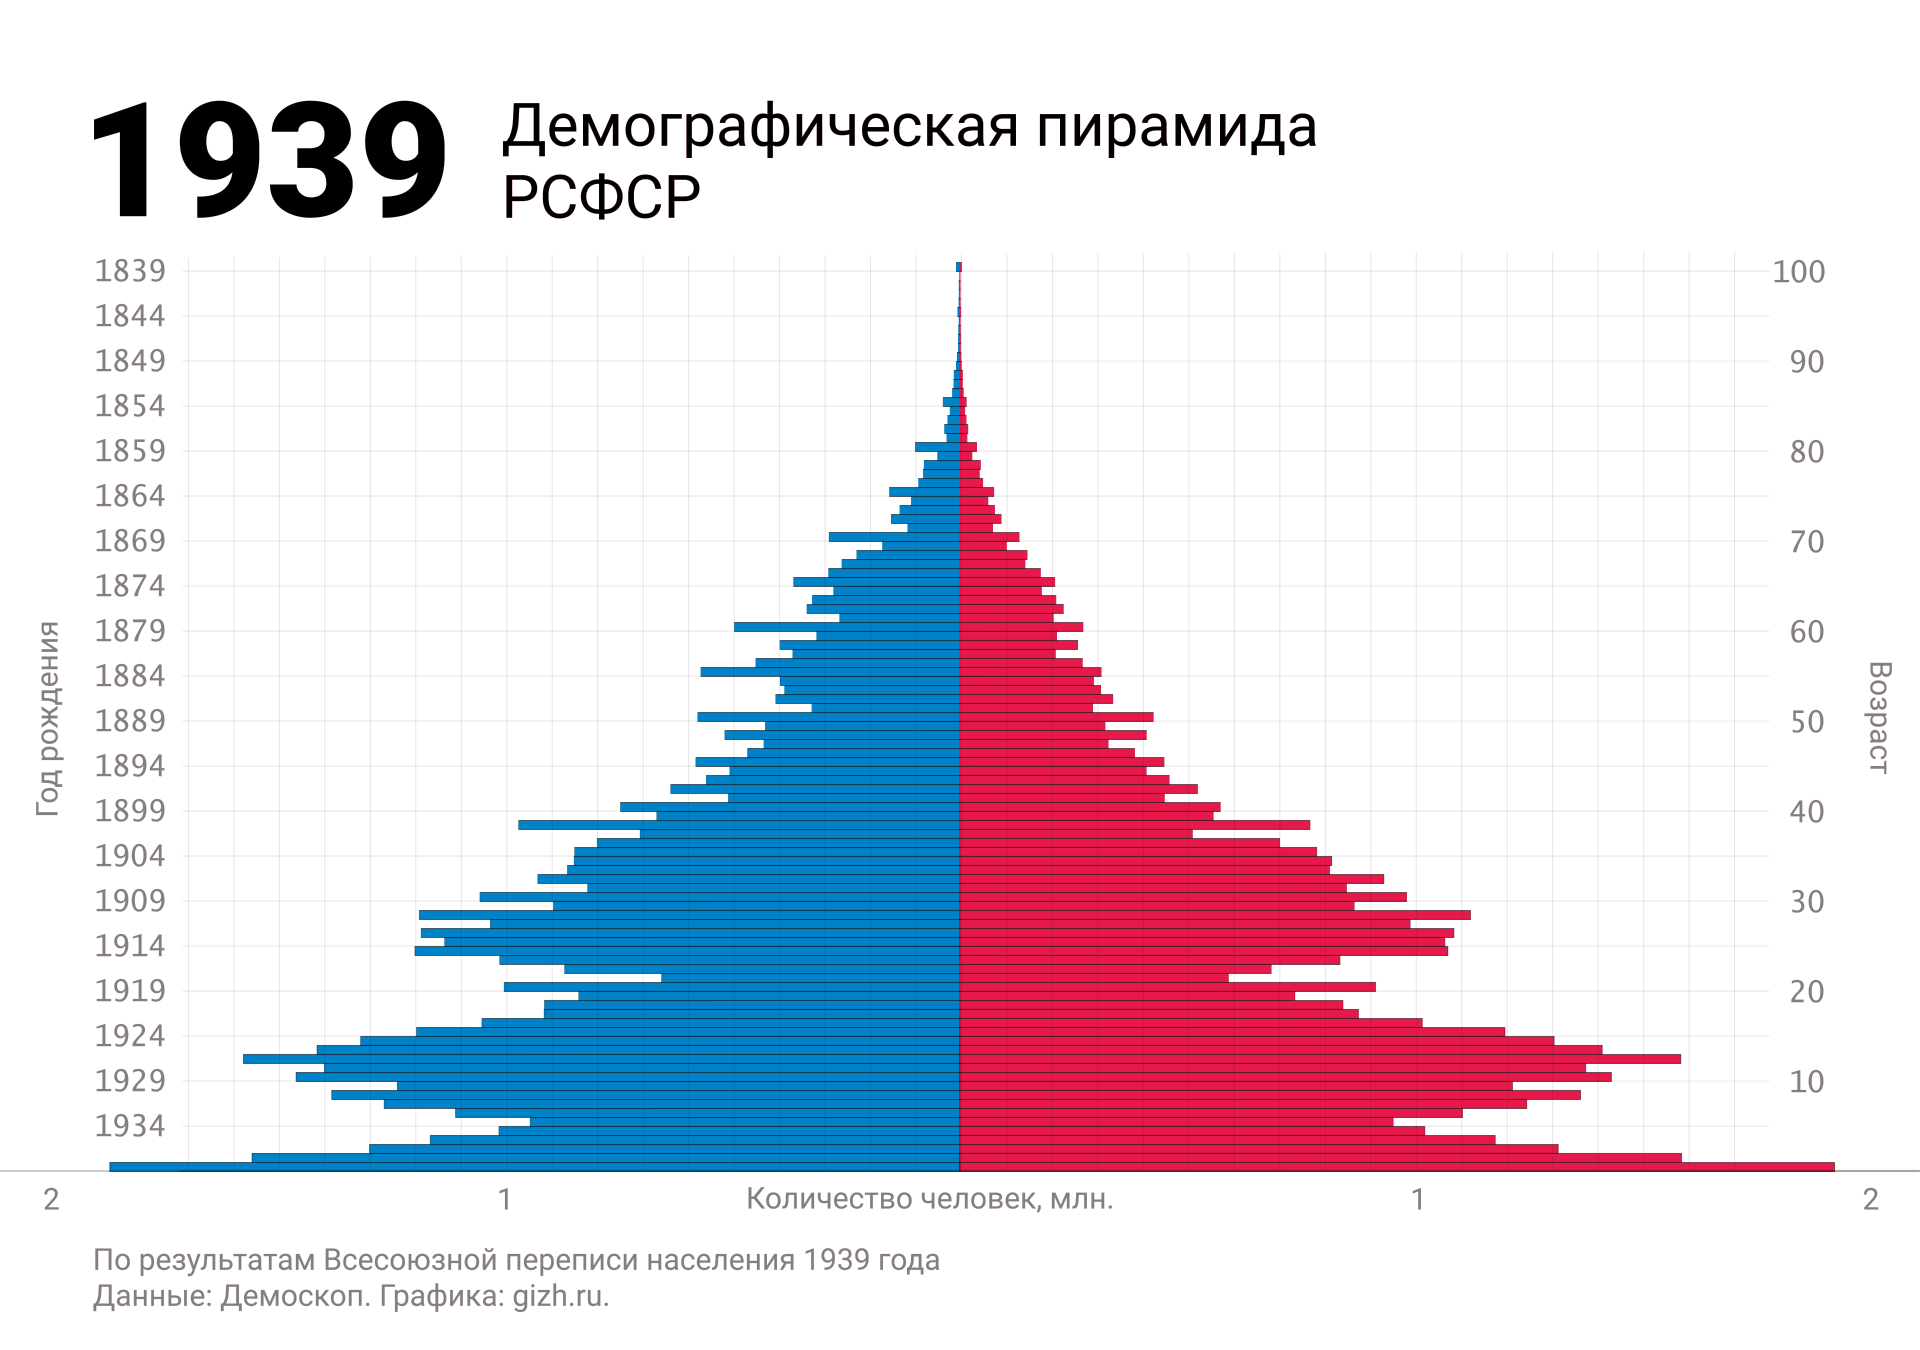 Демографическая (половозрастная) пирамида России (СССР, РСФСР) по переписи 1939